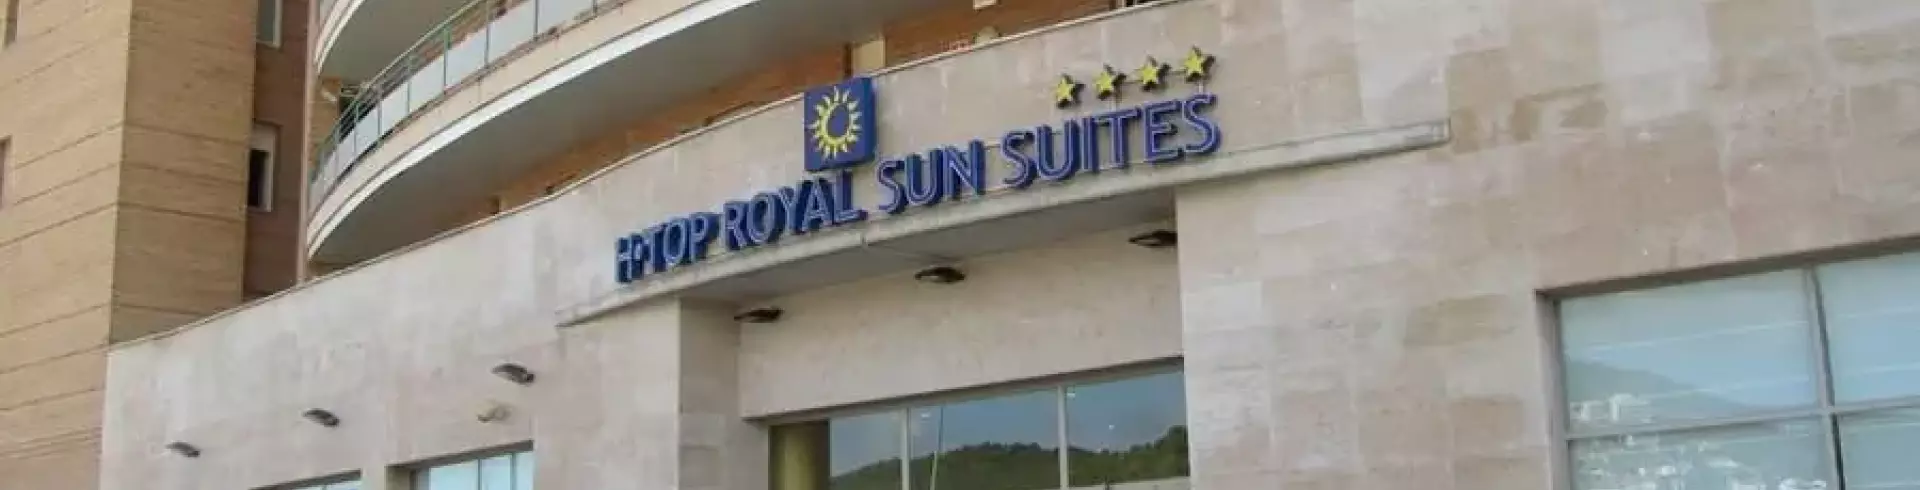 HTop Royal Sun Suites